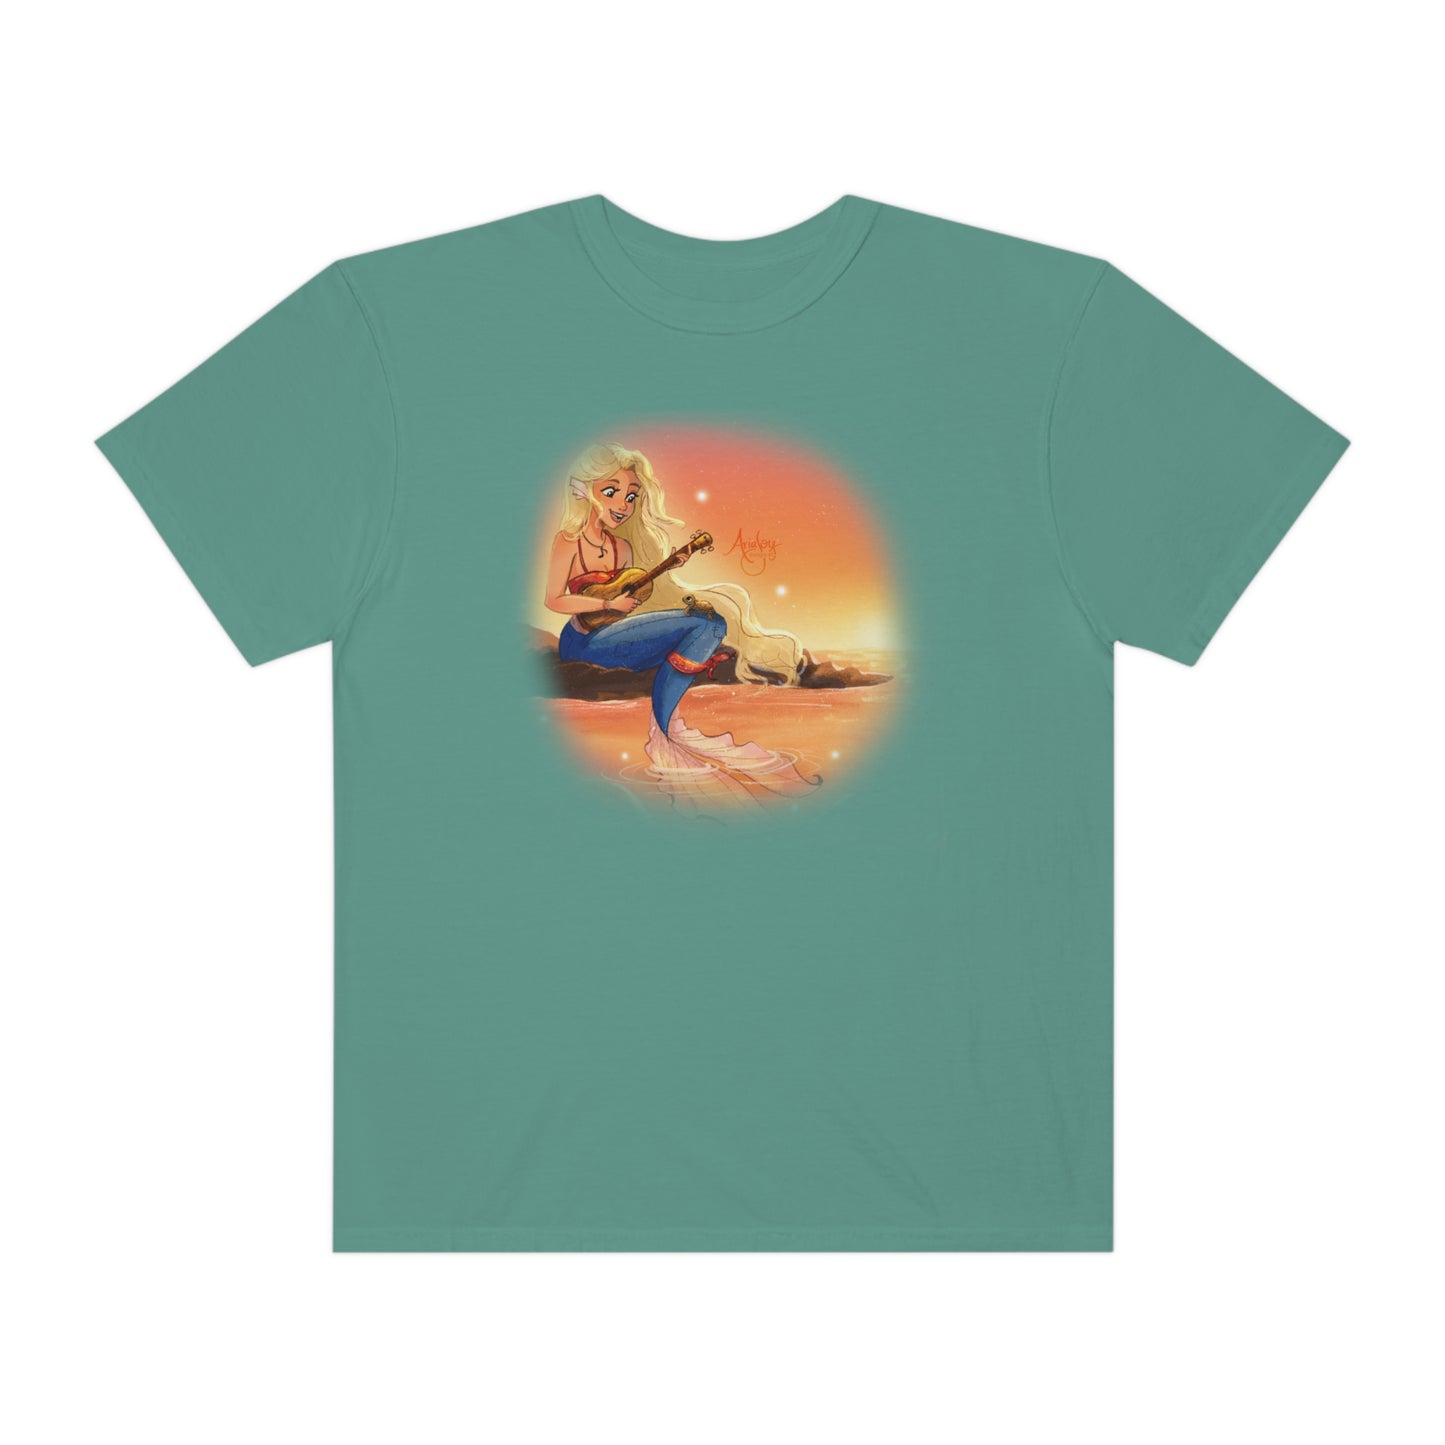 Harmony's Hue - Mermaid T-shirt